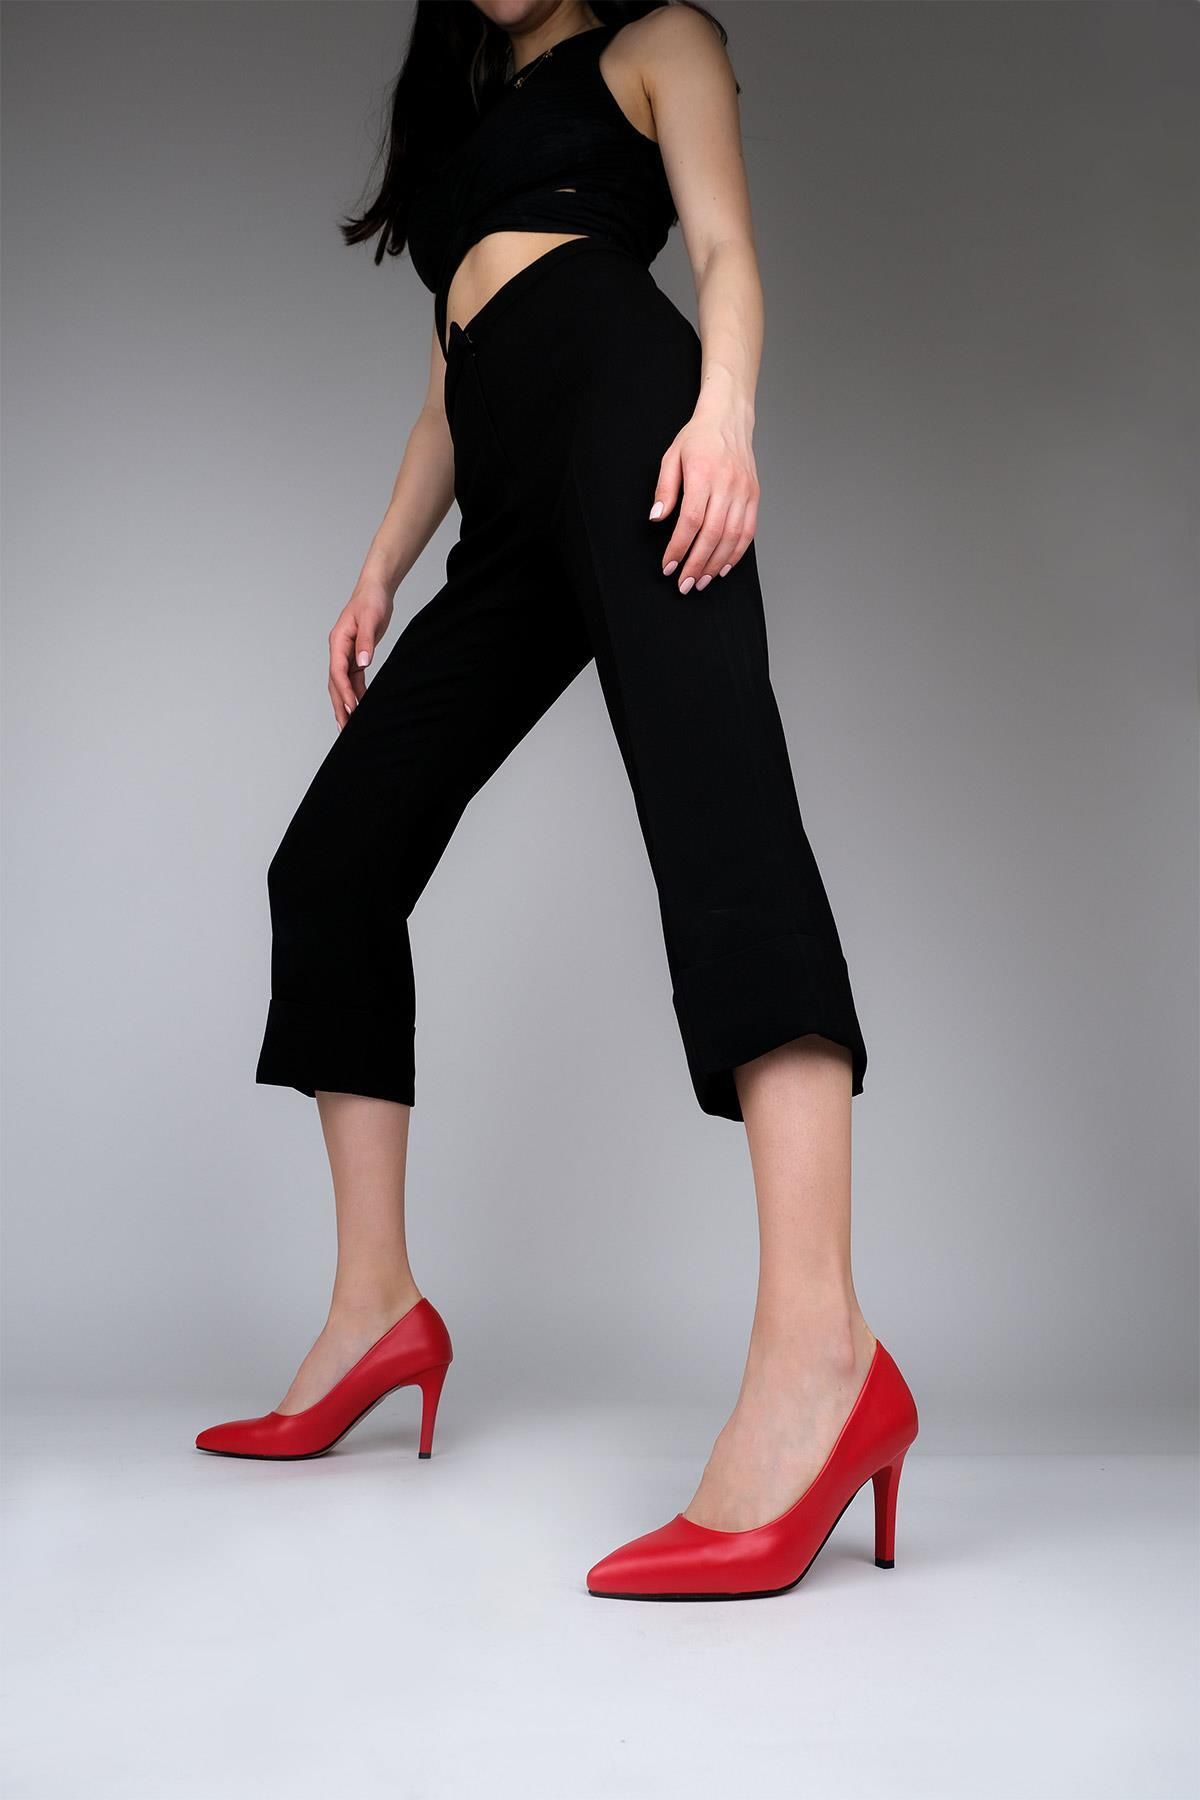 Modabuymus Kırmızı Mat Stiletto Topuklu Kadın Ayakkabı - Anger